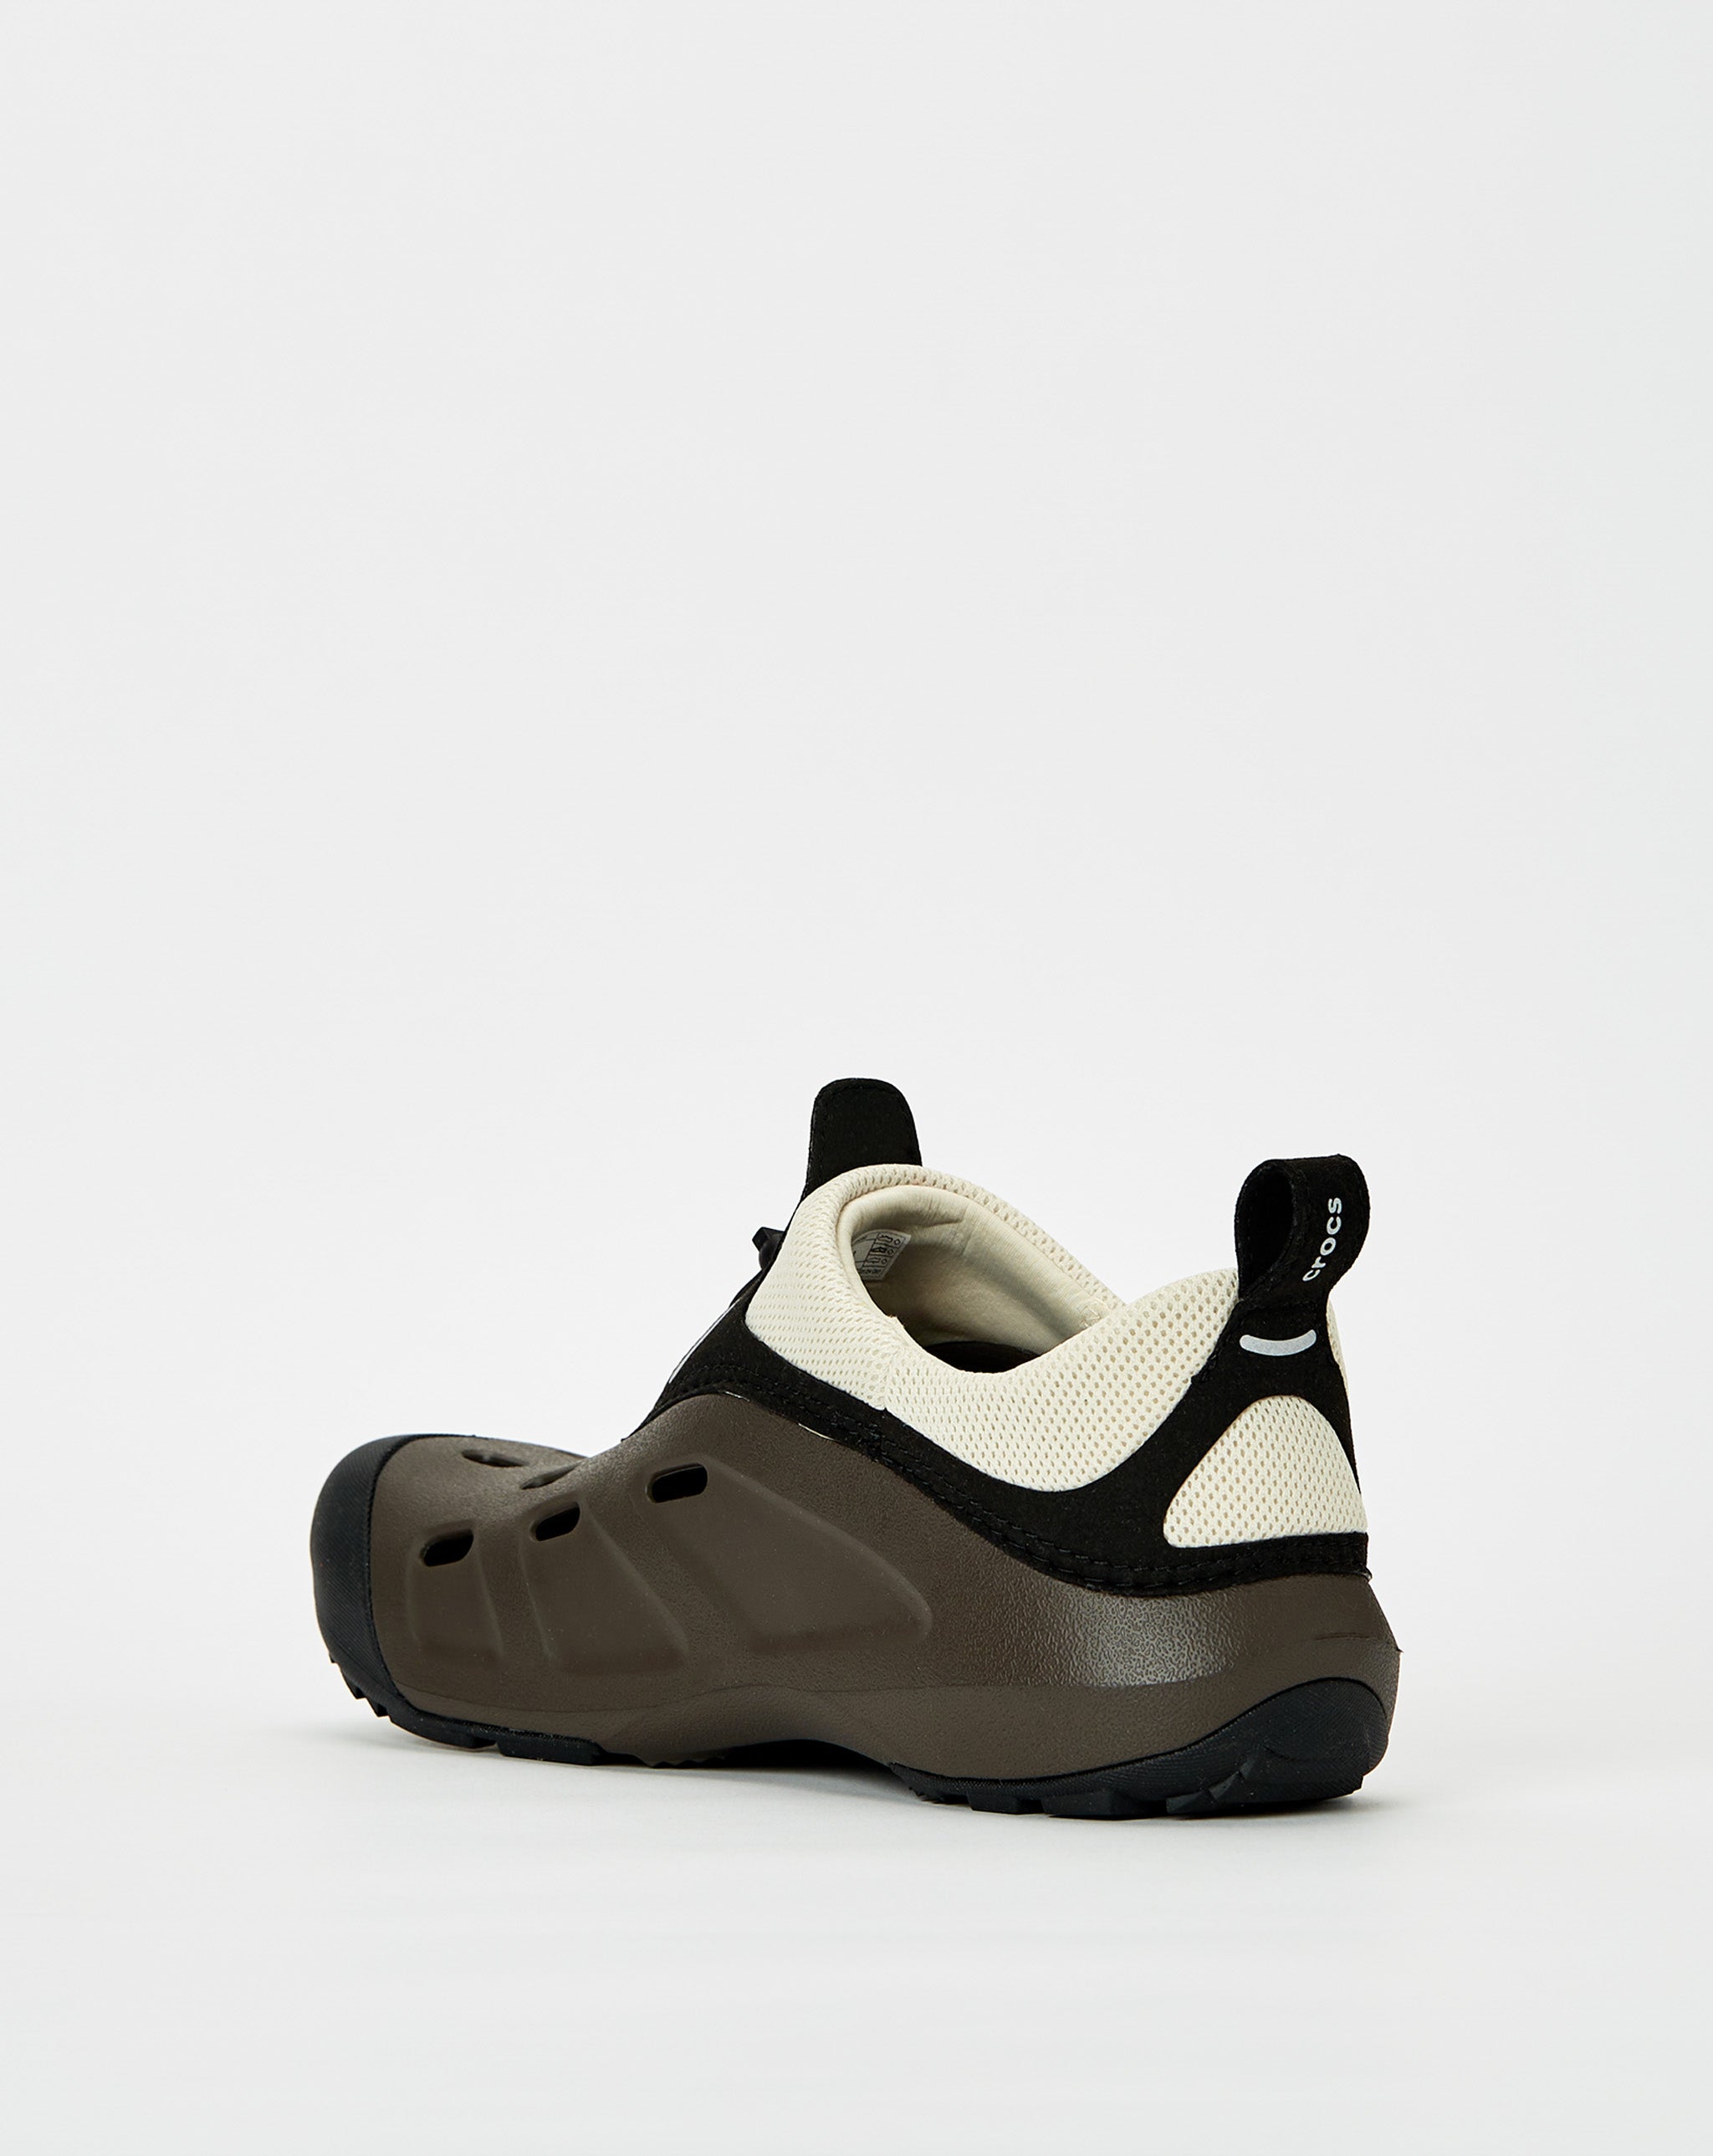 Crocs rejina pyo white leather sandal  - Cheap Urlfreeze Jordan outlet